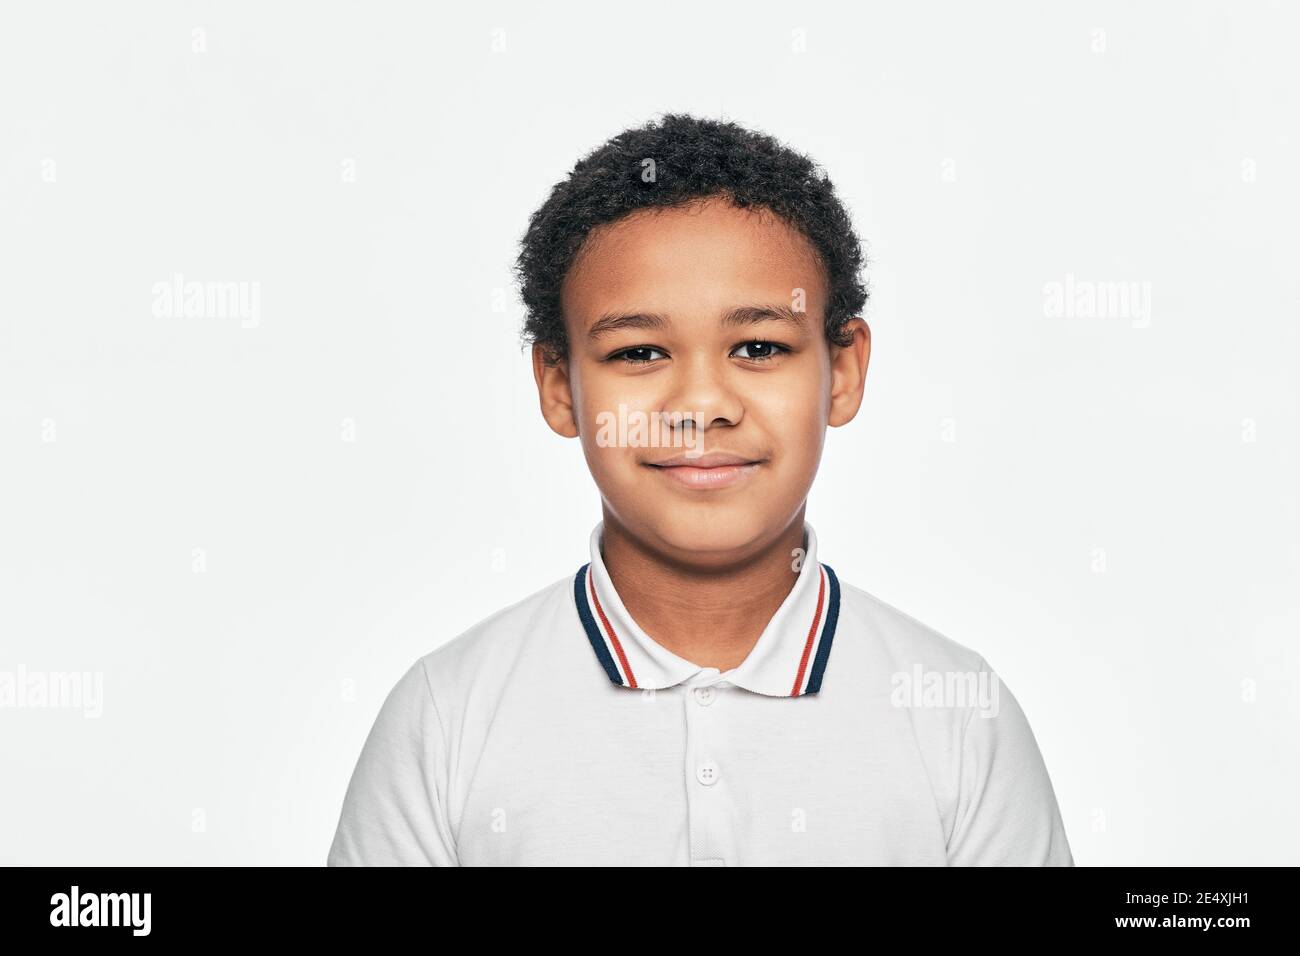 Portrait d'un beau garçon afro-américain avec un sourire, isolé sur fond blanc Banque D'Images